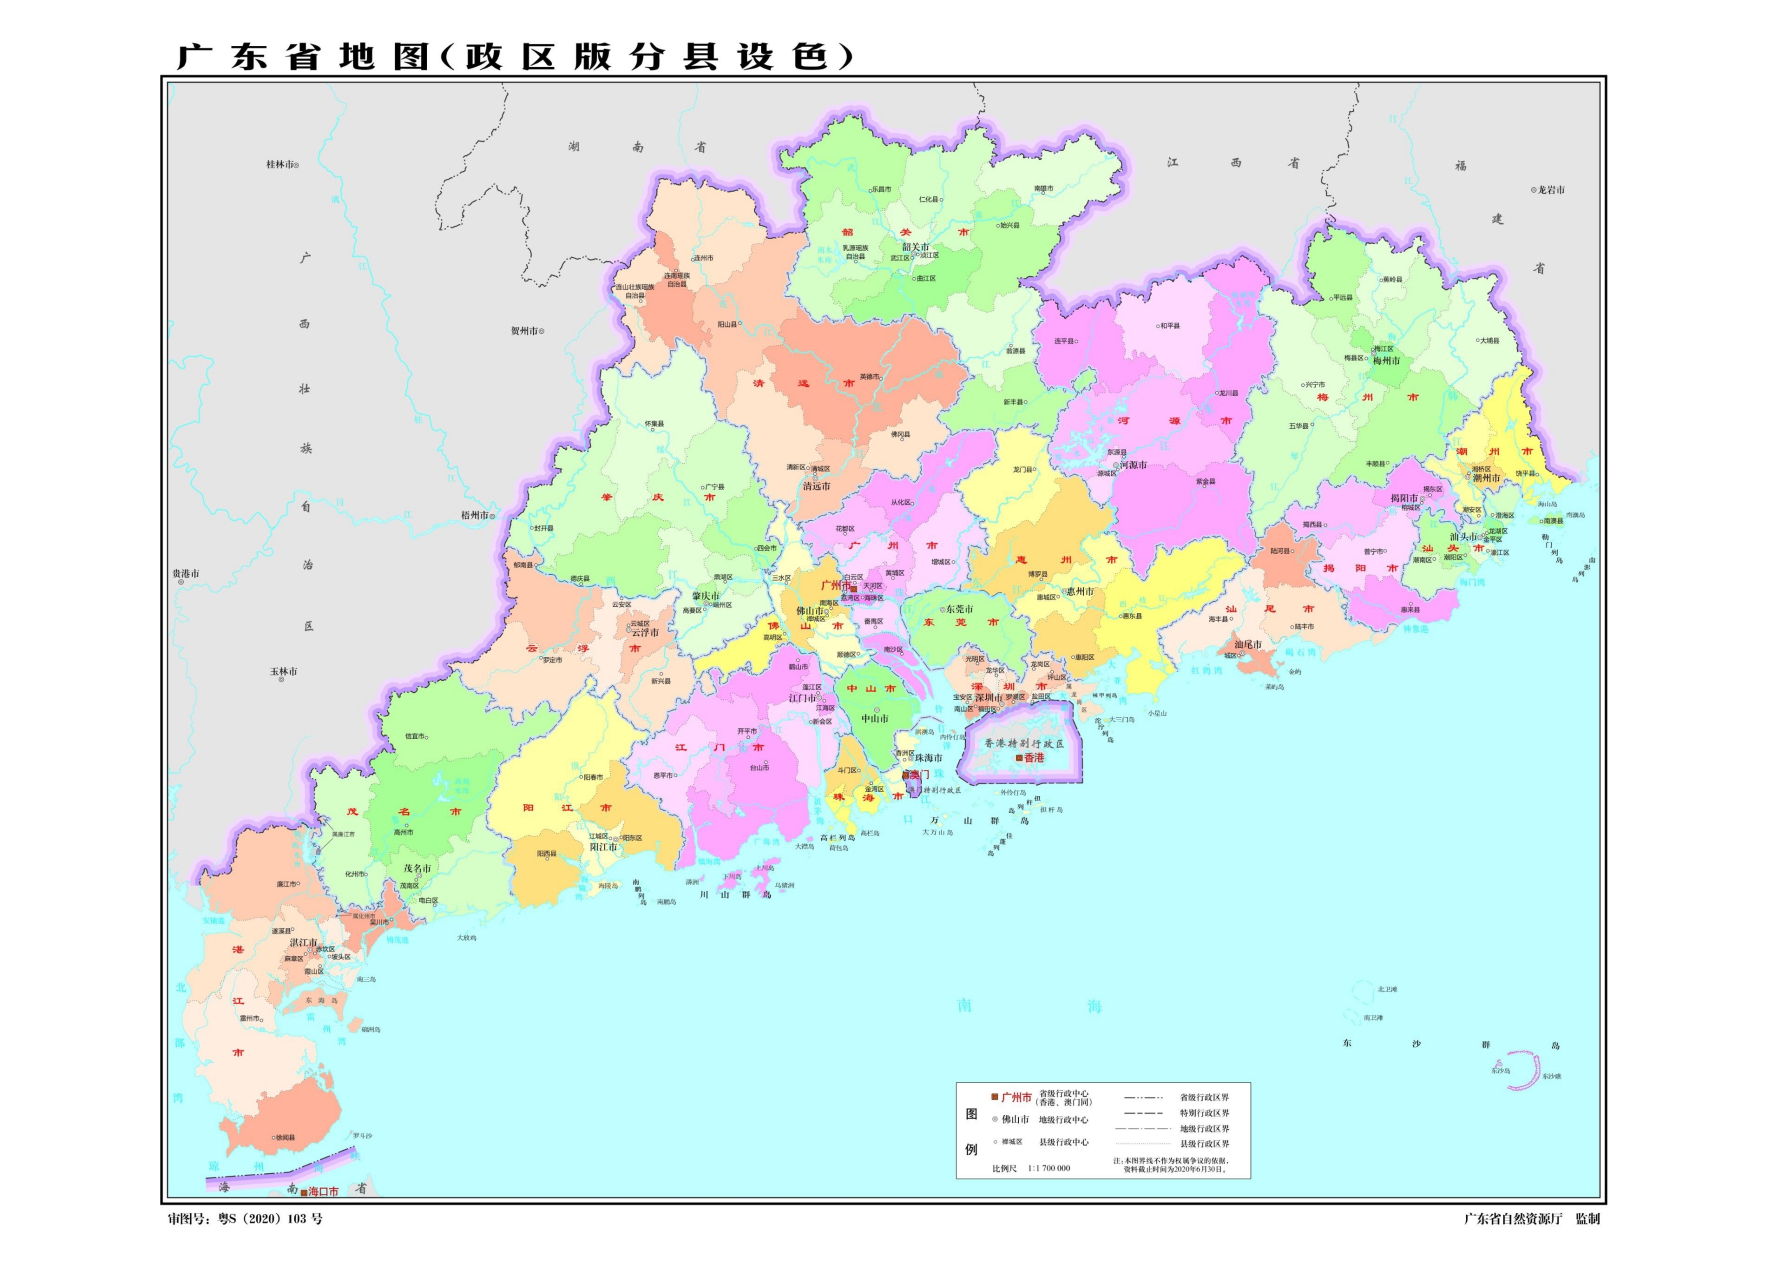 广东省有县级行政区122个,这里面包含有市辖区,县,县级市这三类蚊们